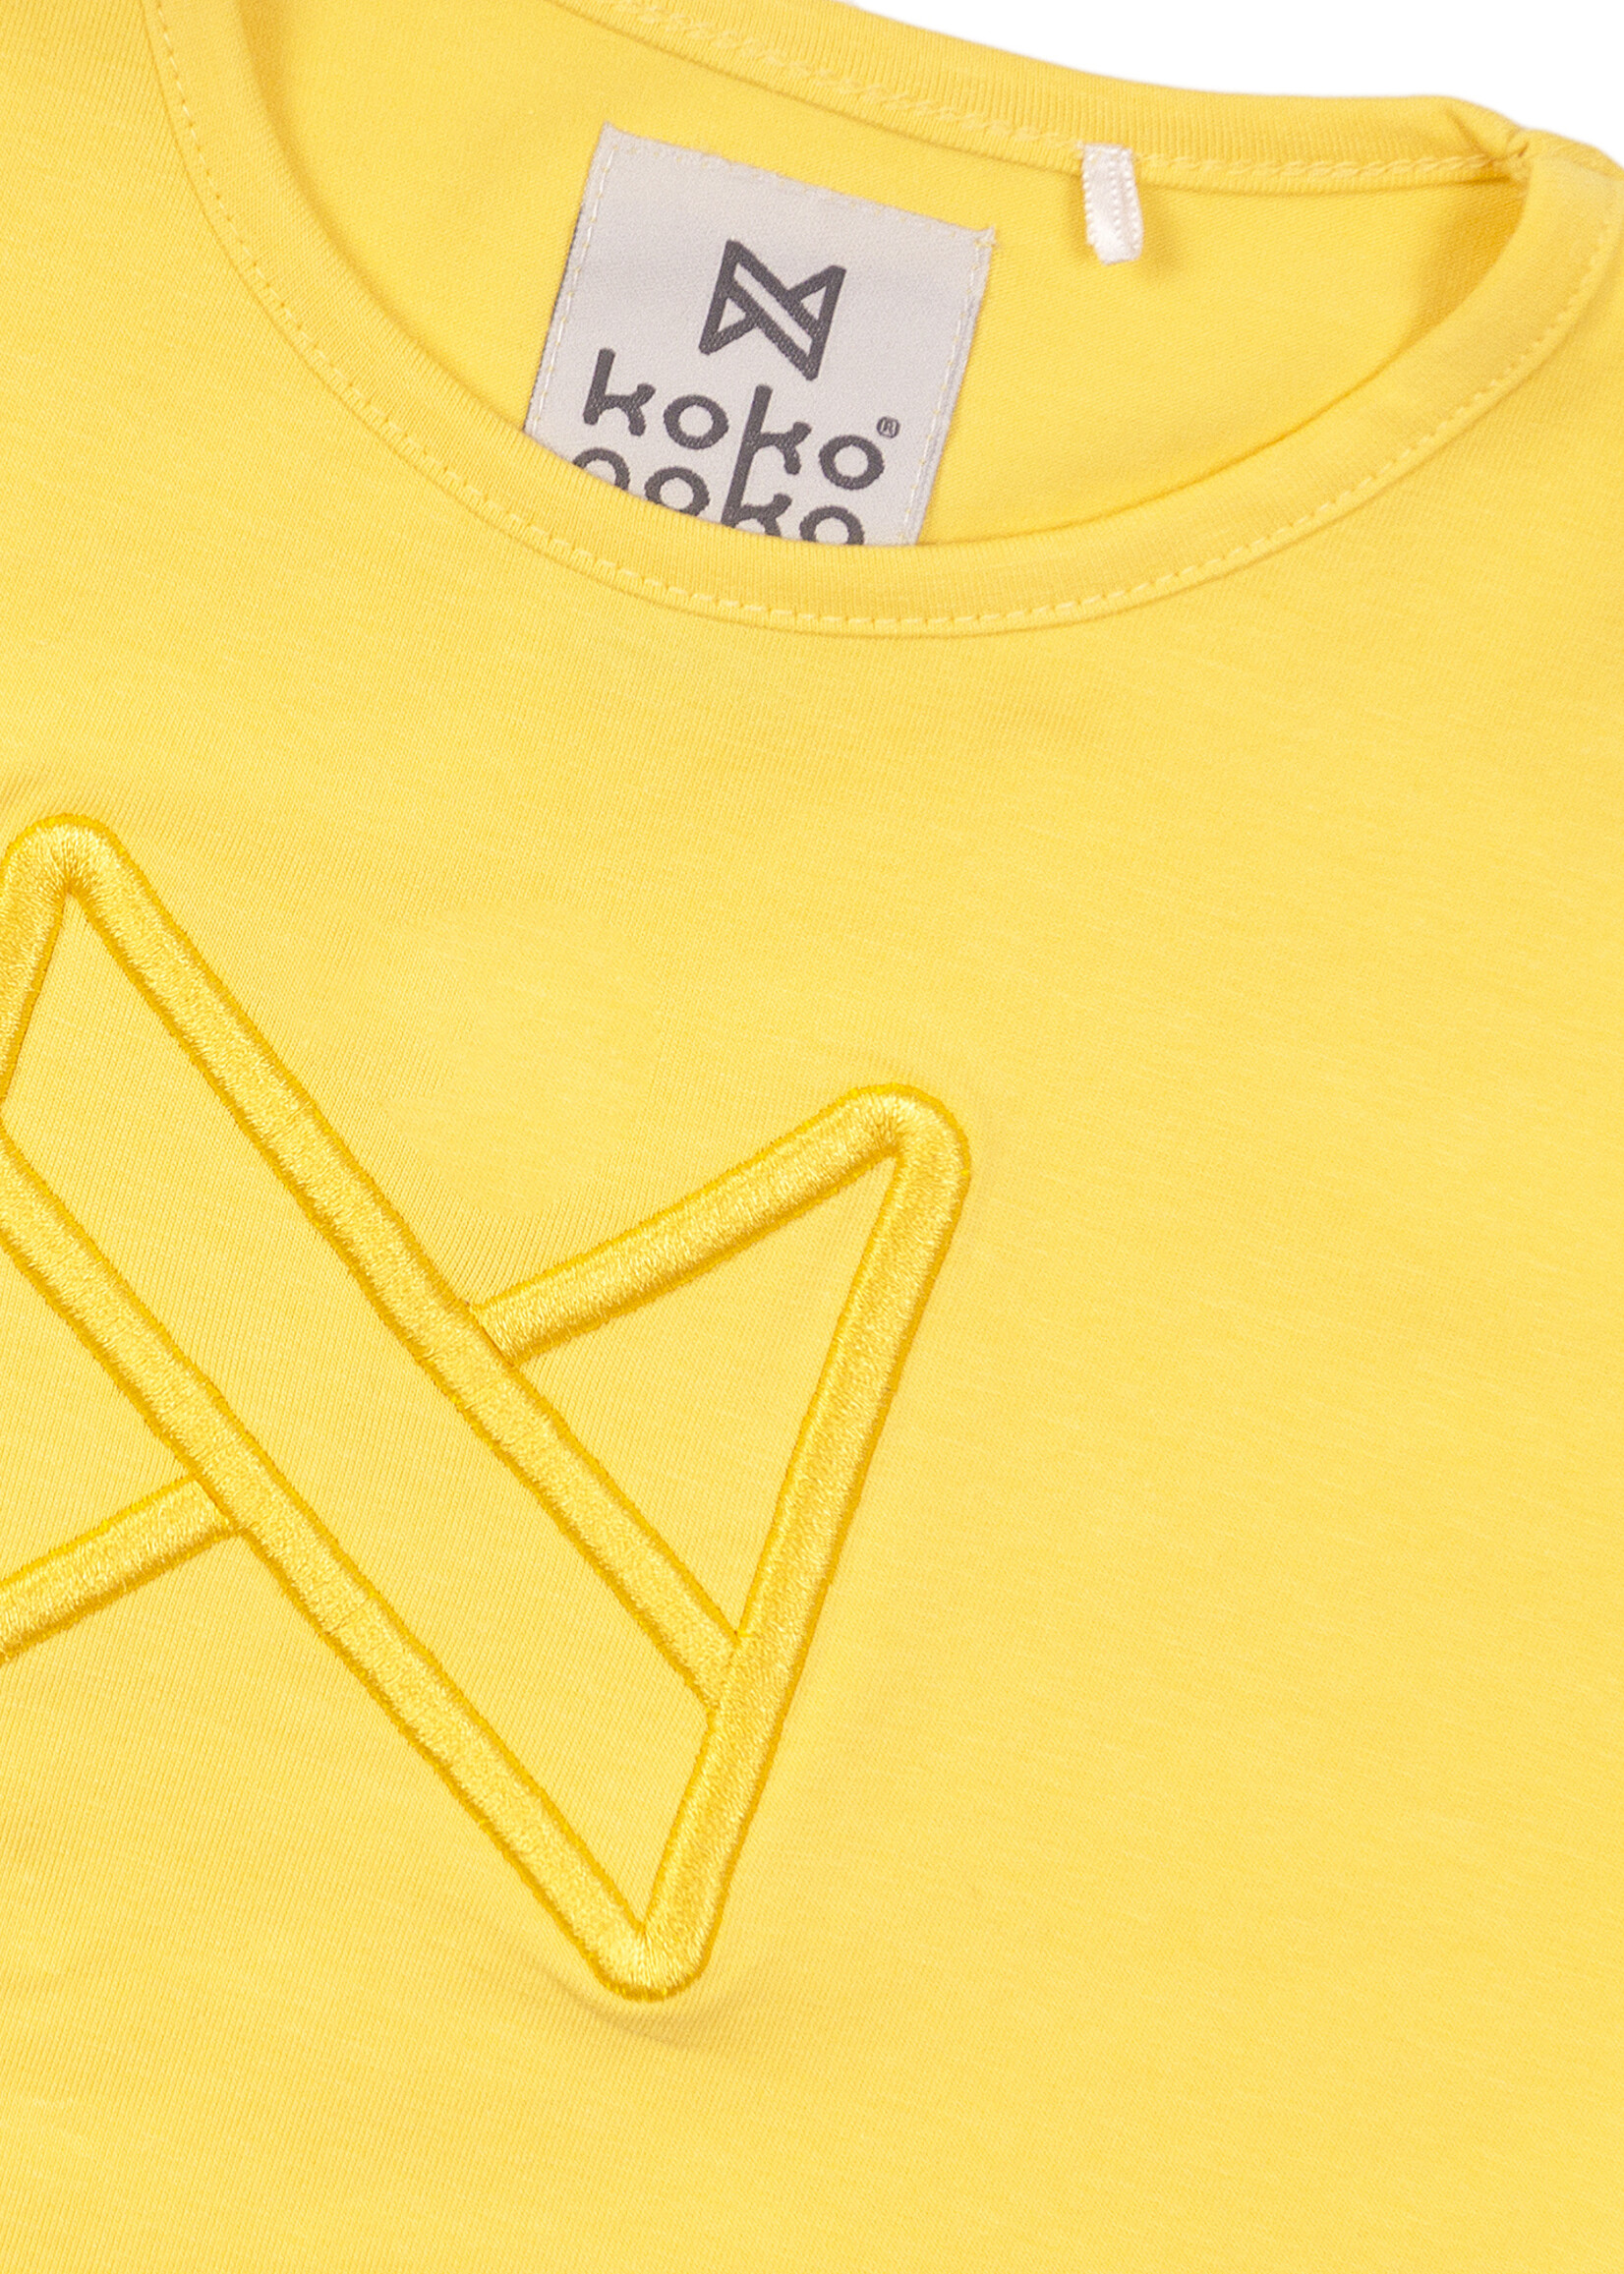 Koko Noko T-shirt ss, Yellow, SS21